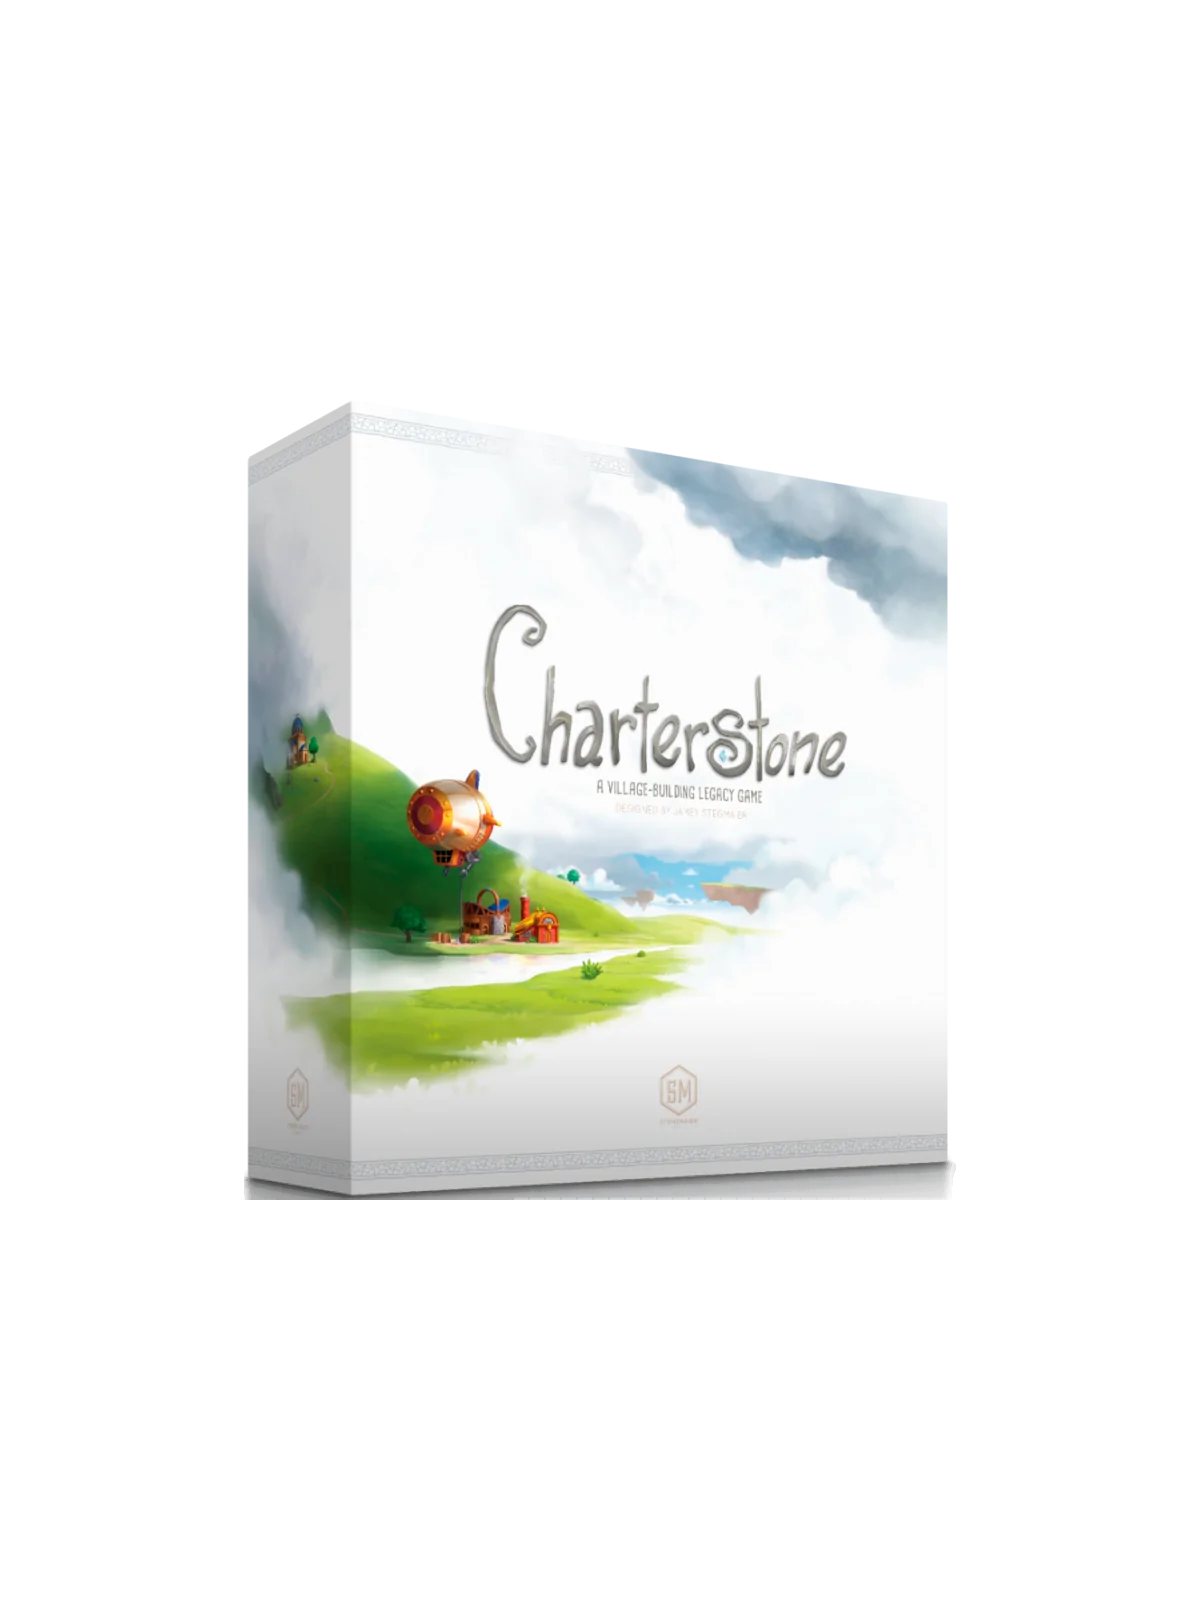 Comprar Charterstone (Inglés) barato al mejor precio 63,00 € de Stonem